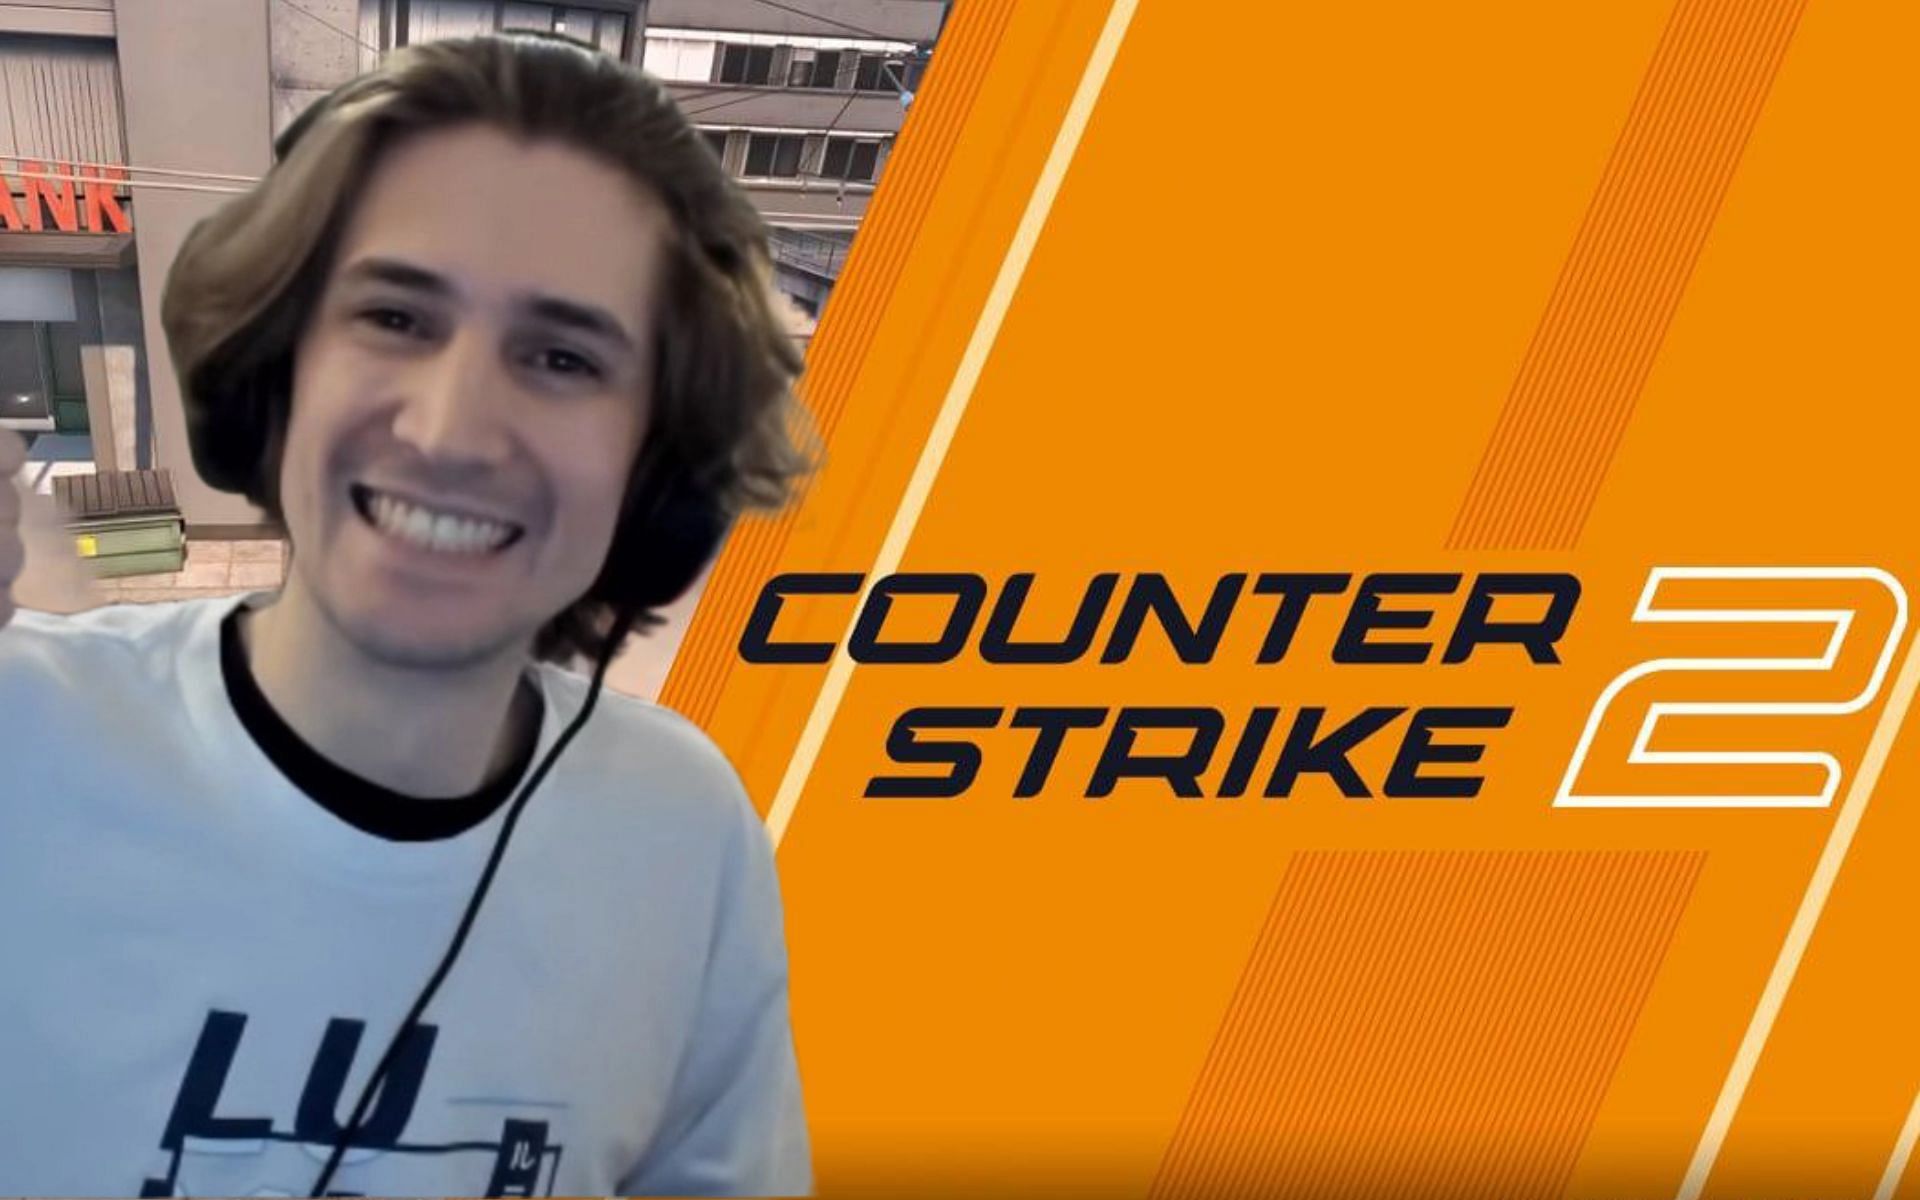 xQc onthult dat het is uitgenodigd om Counter-Strike 2 te spelen en toont directe berichten op Twitter